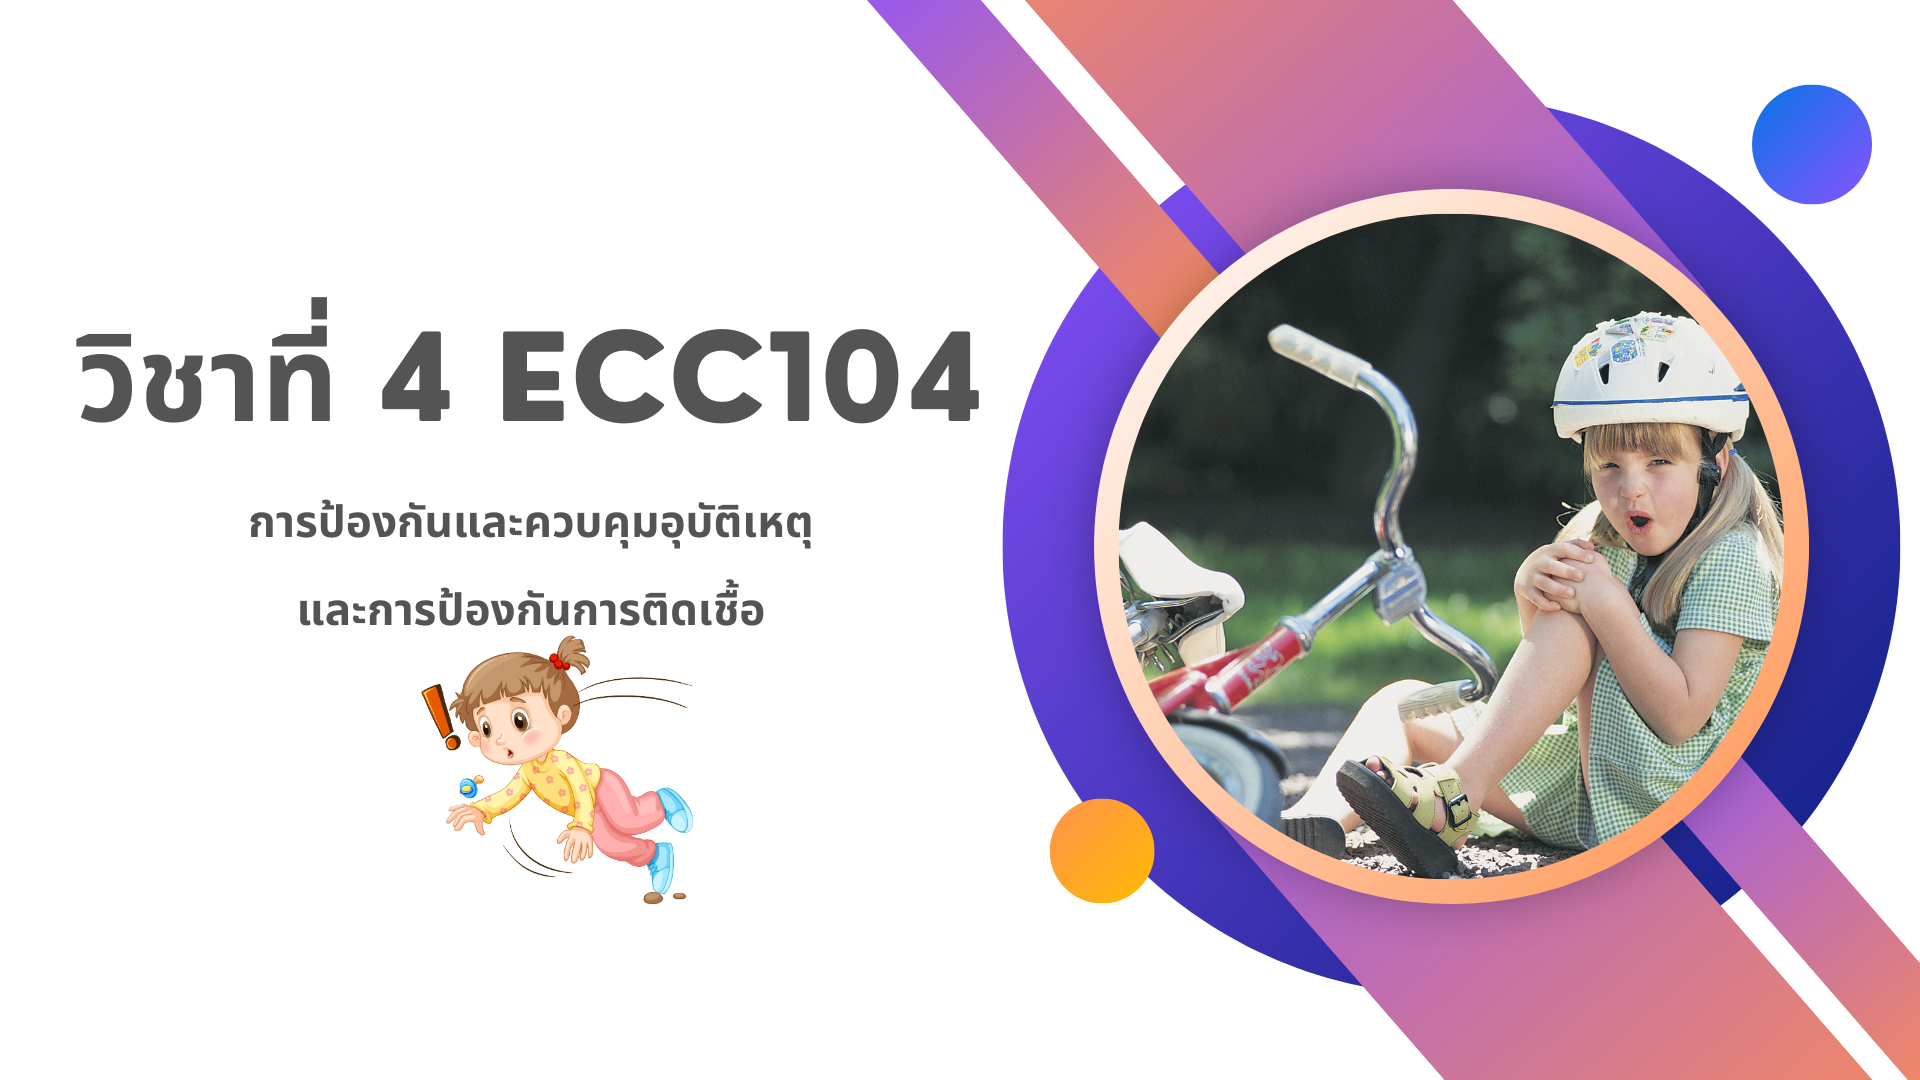 วิชาที่ 4 ECC104: การจัดสิ่งแวดล้อมให้ปลอดภัย ปฐมพยาบาลเด็กเบื้องต้น และช่วยชีวิตขั้นพื้นฐานในเด็กปฐมวัย 